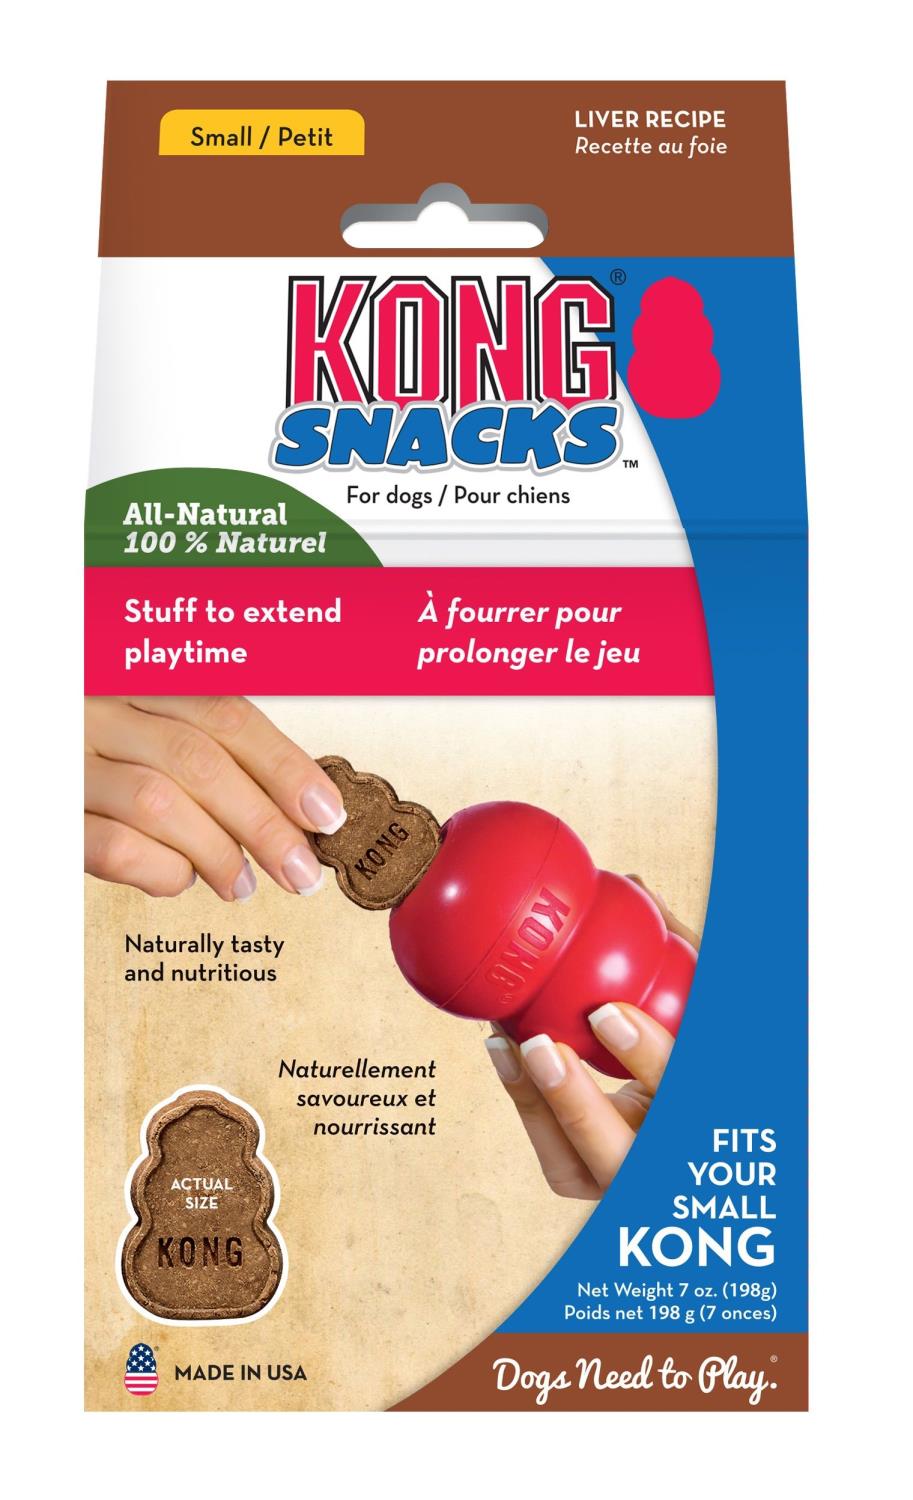 Kong Snacks liver